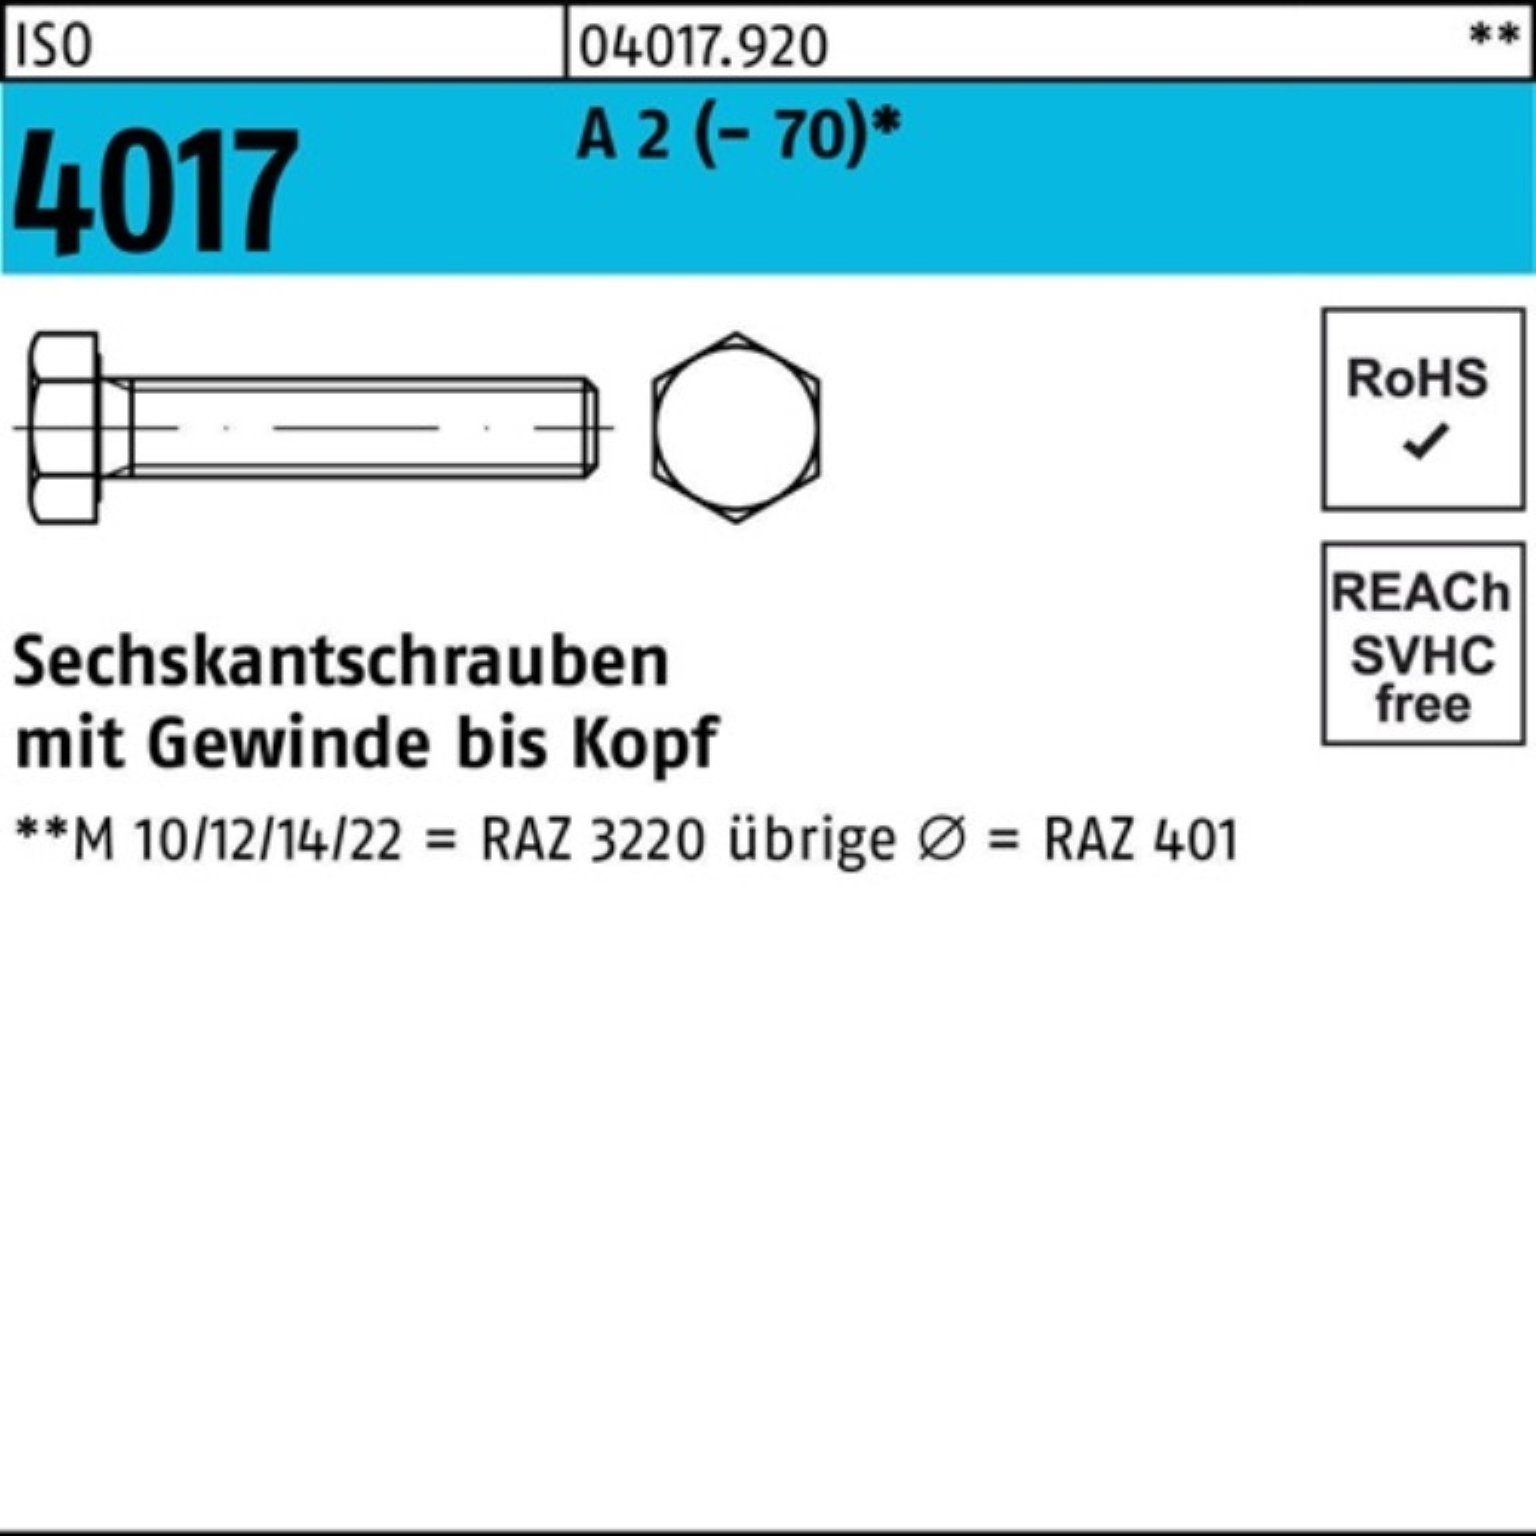 Bufab Sechskantschraube 100er Pack Sechskantschraube 4017 M16x VG 2 (70) 90 ISO 25 Stück A